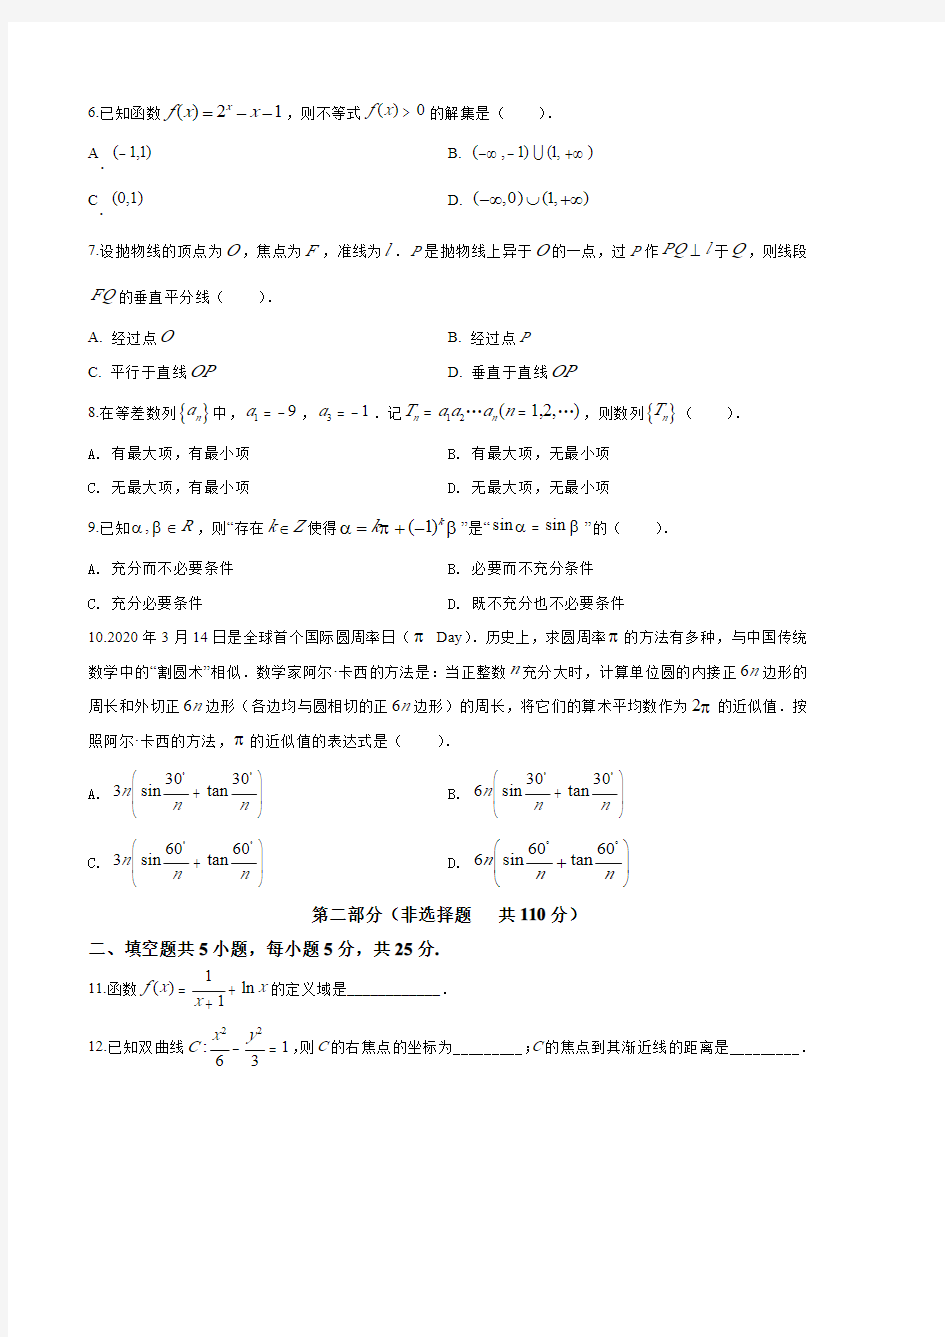 2020年北京市高考数学试卷(原卷版)